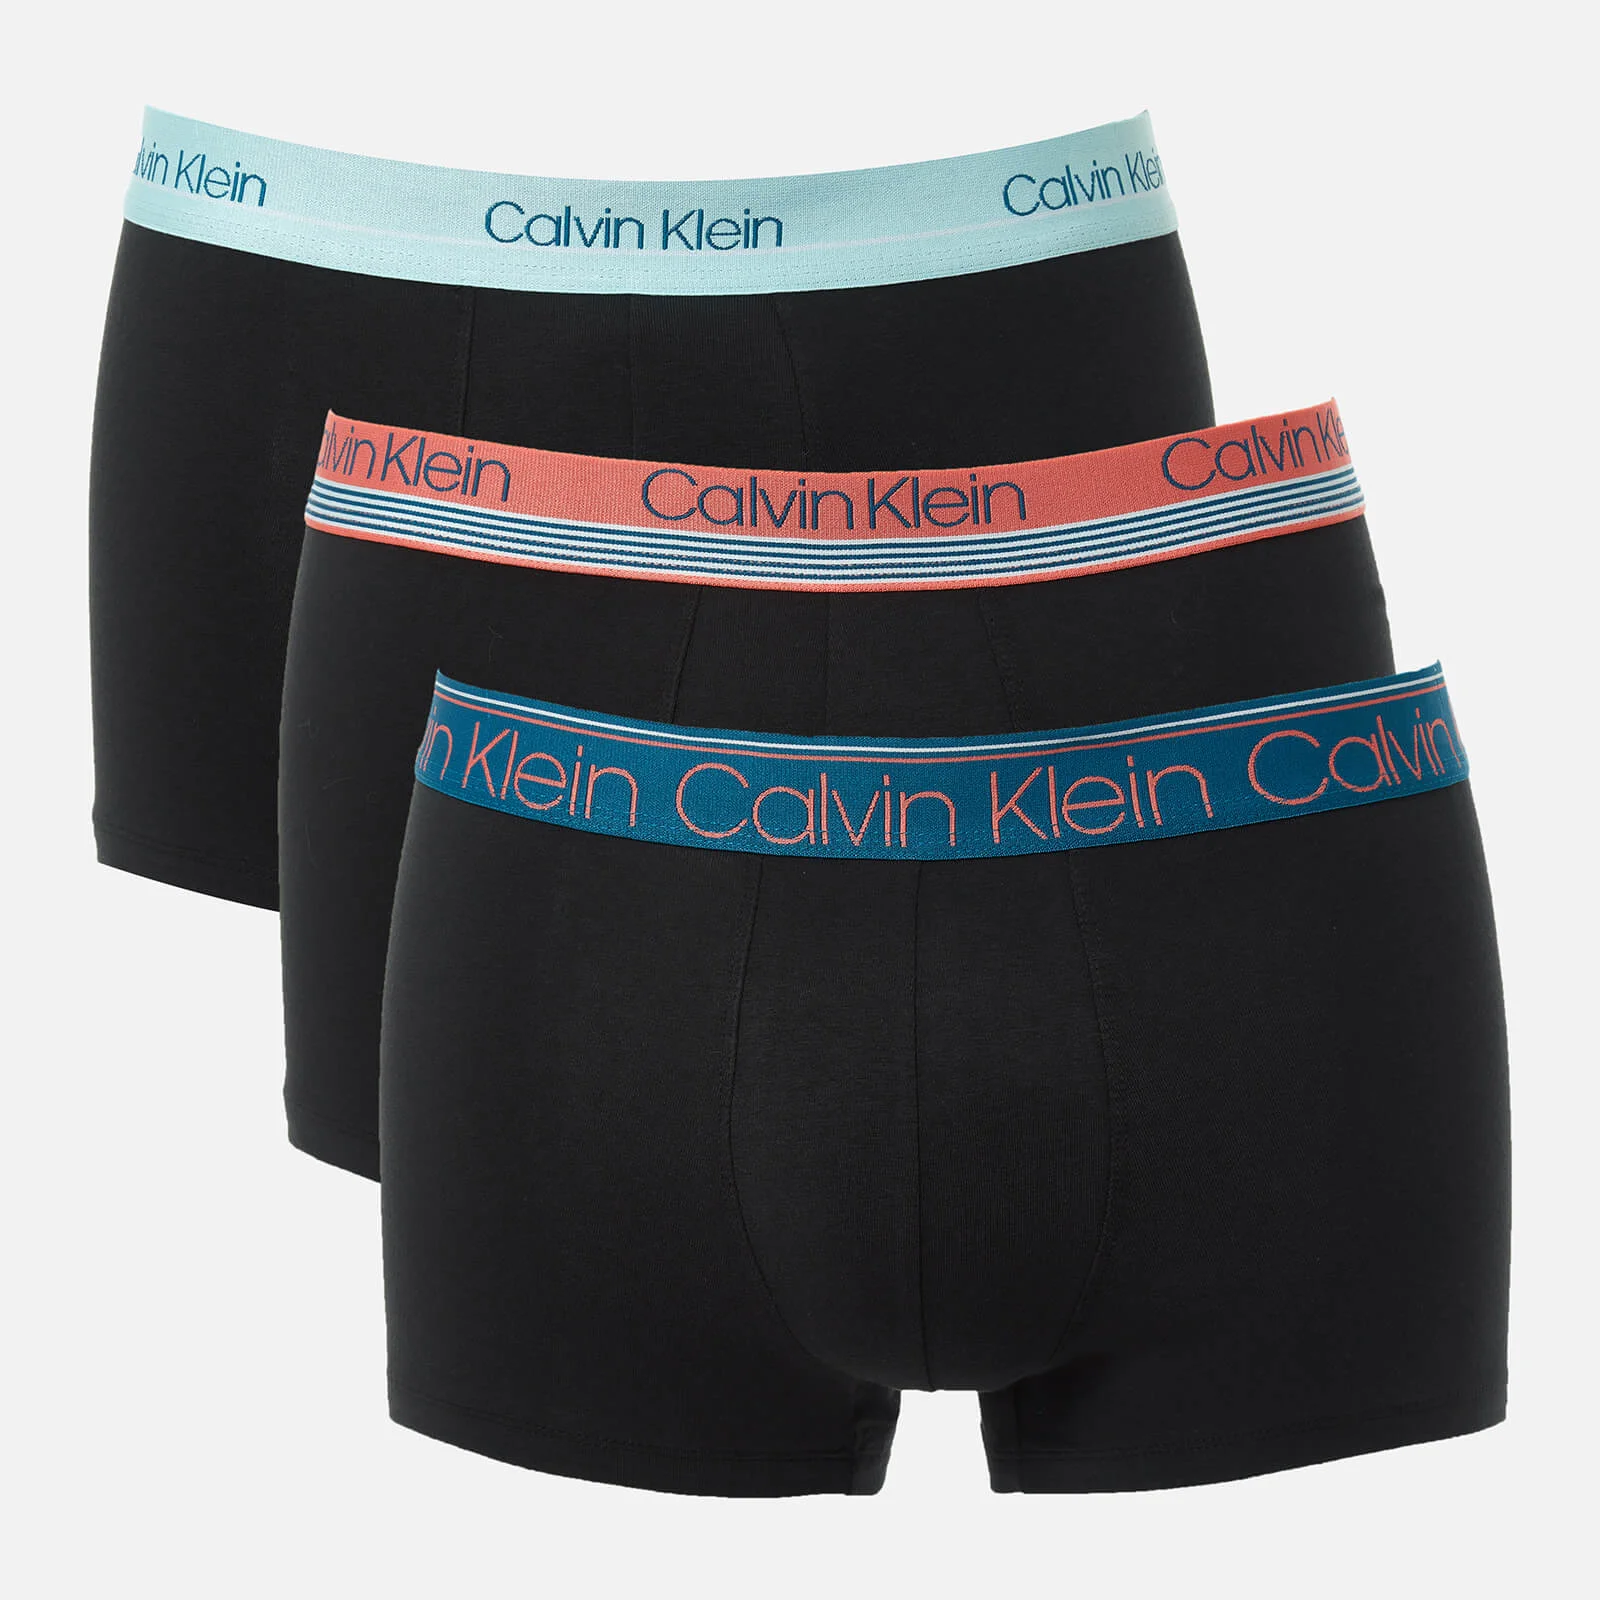 Calvin Klein Men's 3 Pack Trunks - Vermount Slate/Soft Flair Image 1